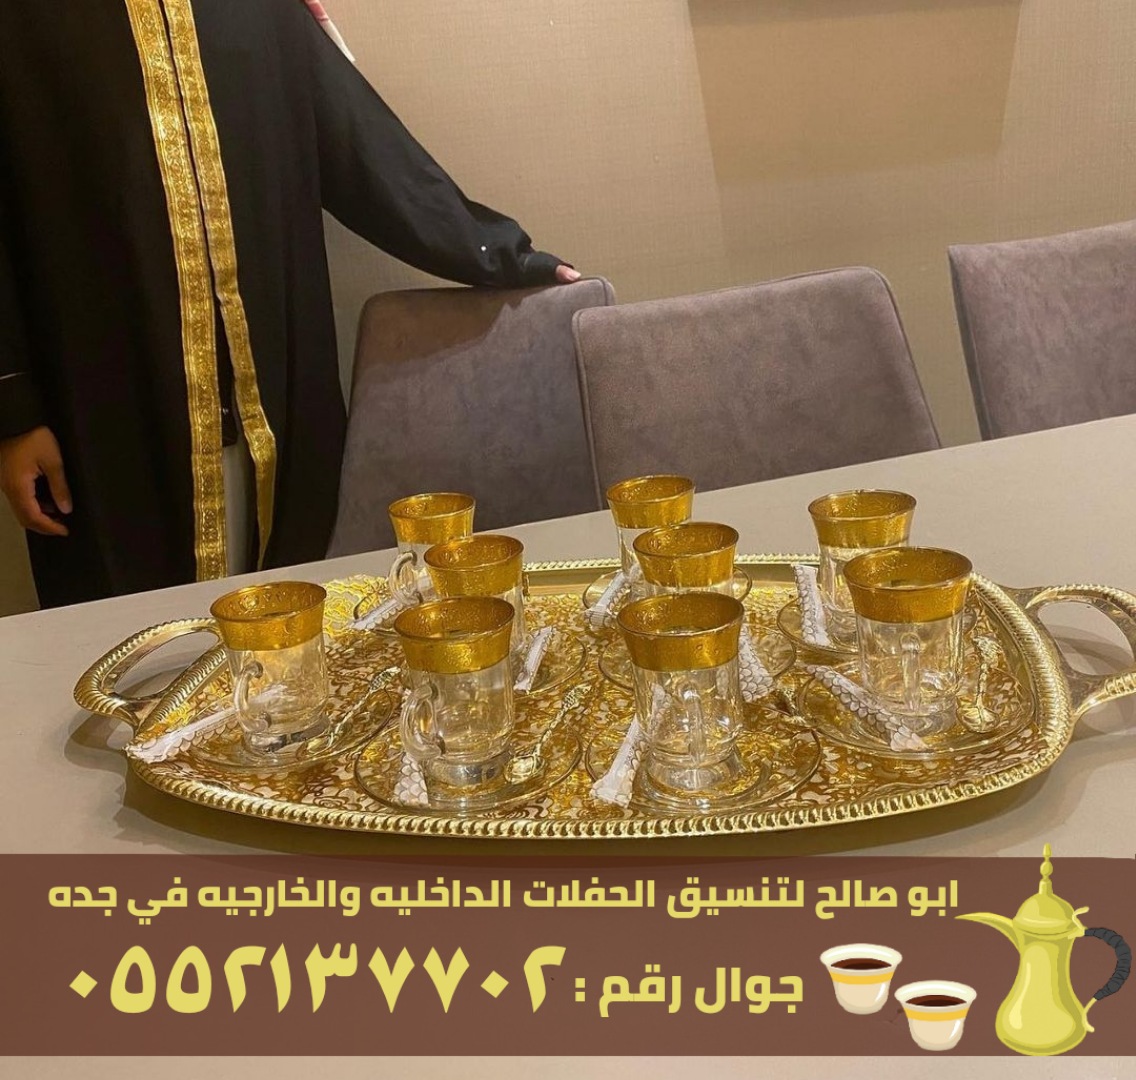 مباشرين قهوة و قهوجيين في جدة, 0552137702 P_26364o2mf7